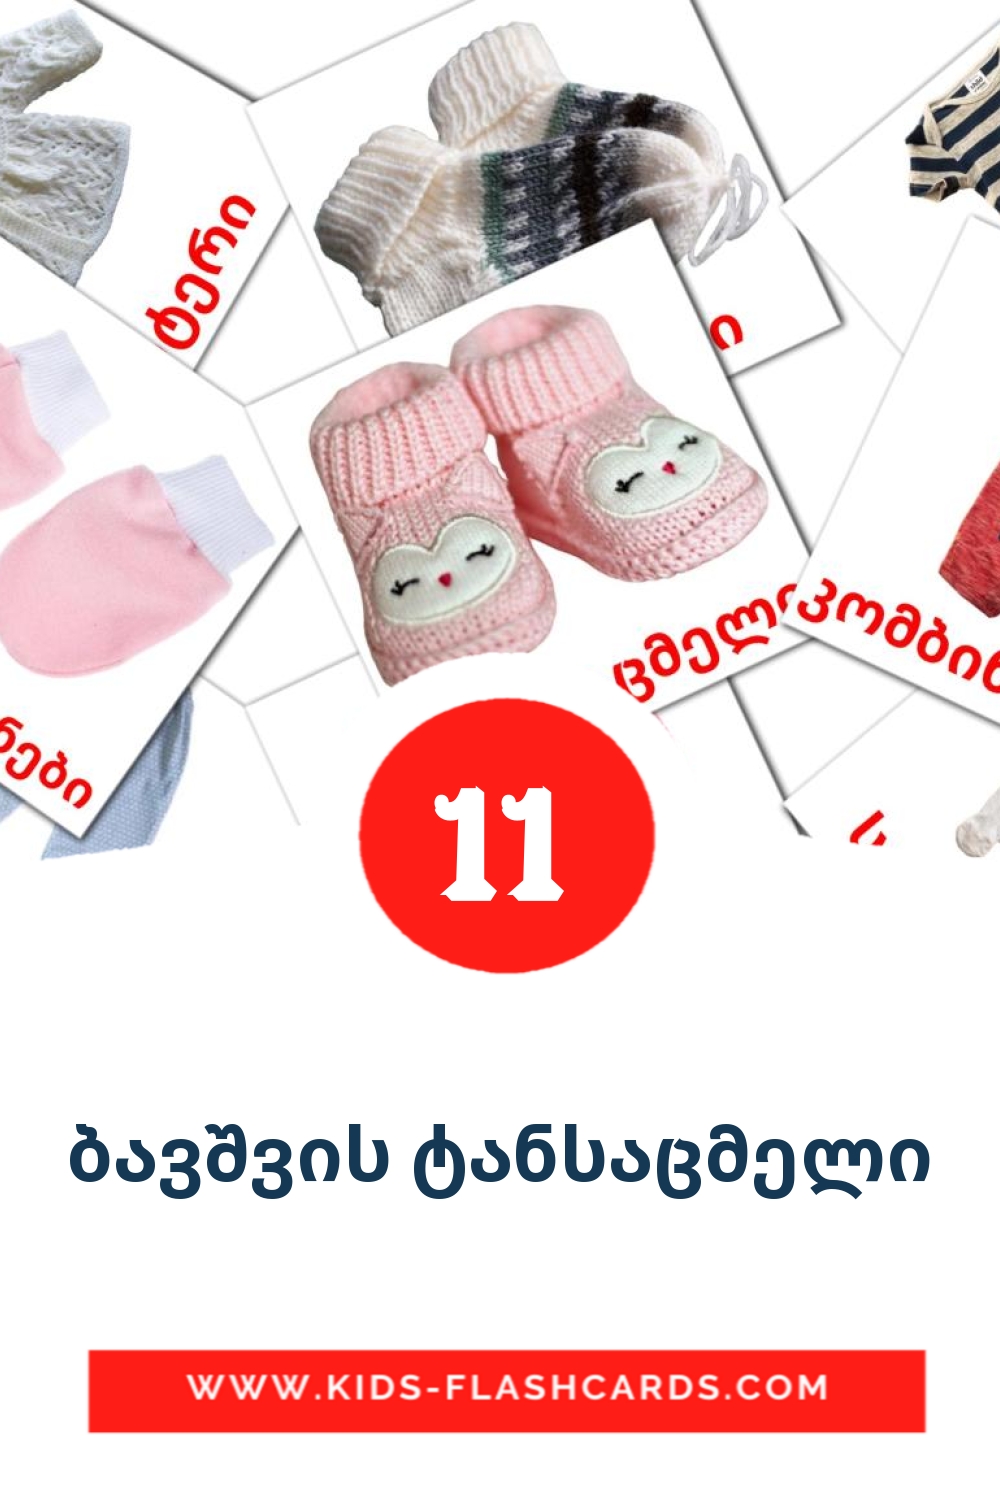 11 Cartões com Imagens de ბავშვის ტანსაცმელი para Jardim de Infância em georgiano